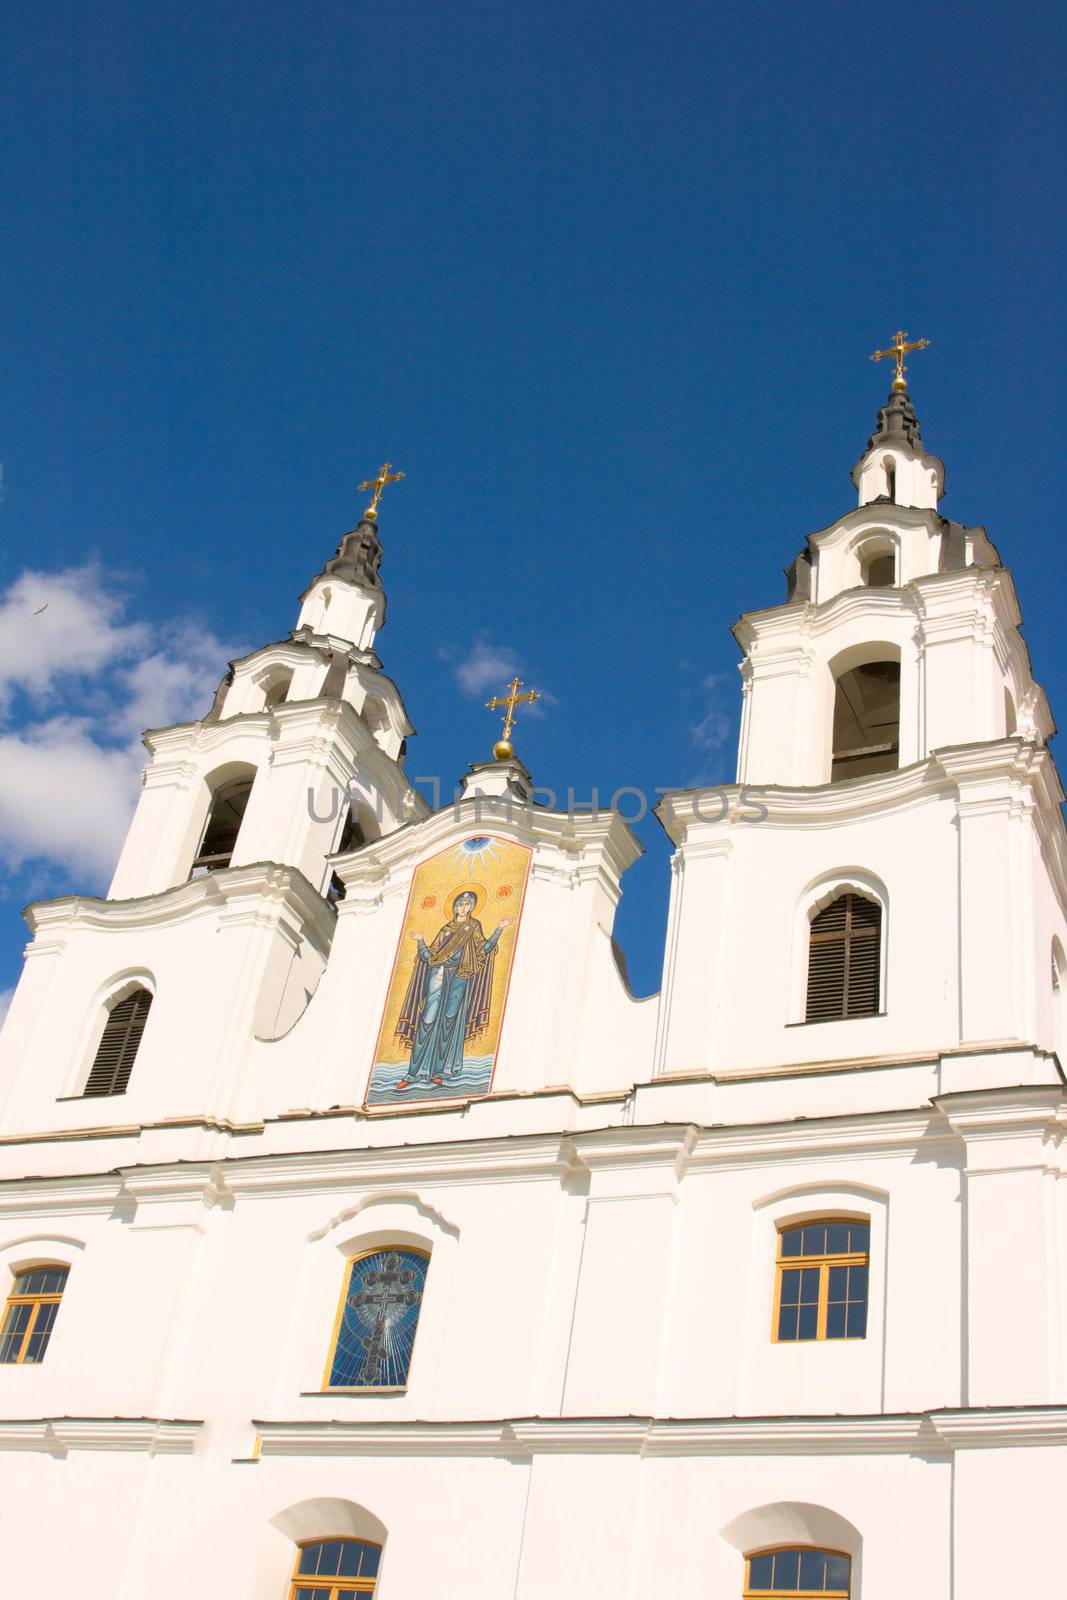 Old orthodox church by dimol